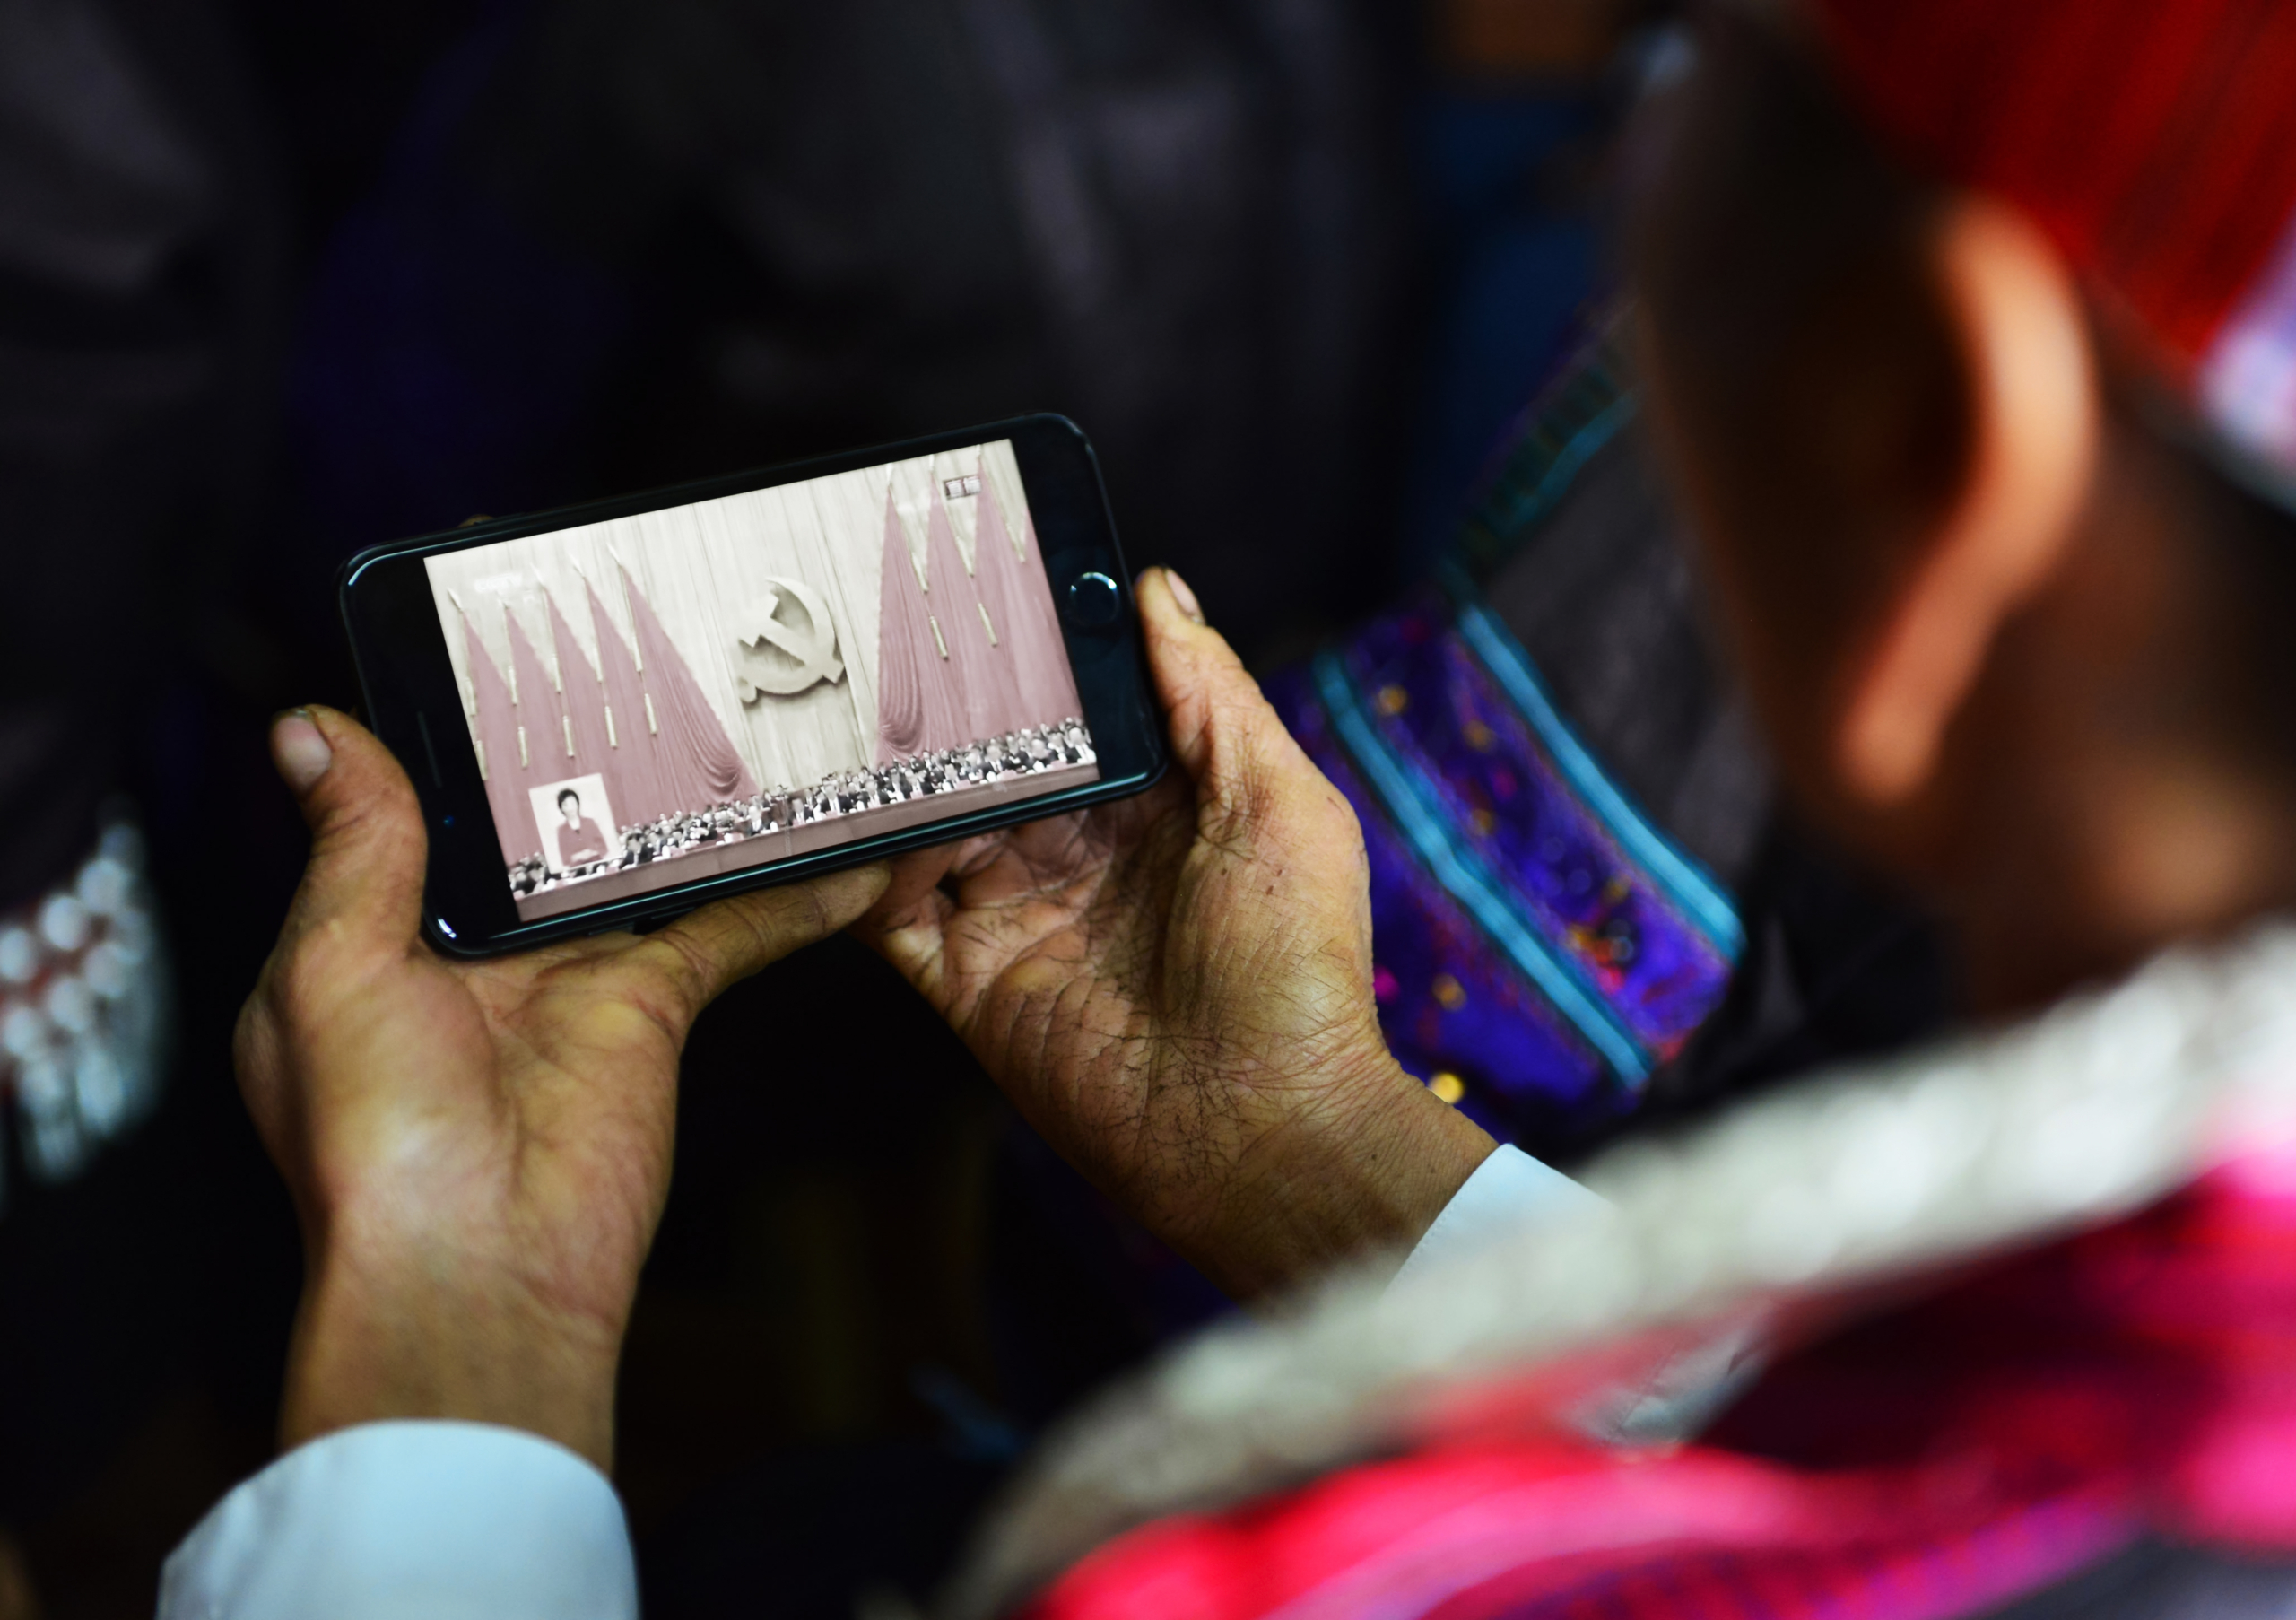 Một phụ nữ dân tộc Miêu theo dõi phiên khai mạc Đại hội Đảng lần thứ 19 trên điện thoại thông minh ở Kiến Hợi, tỉnh Quý Châu, Trung Quốc, vào ngày 18/10/2017. (Ảnh: STR/AFP qua Getty Images)